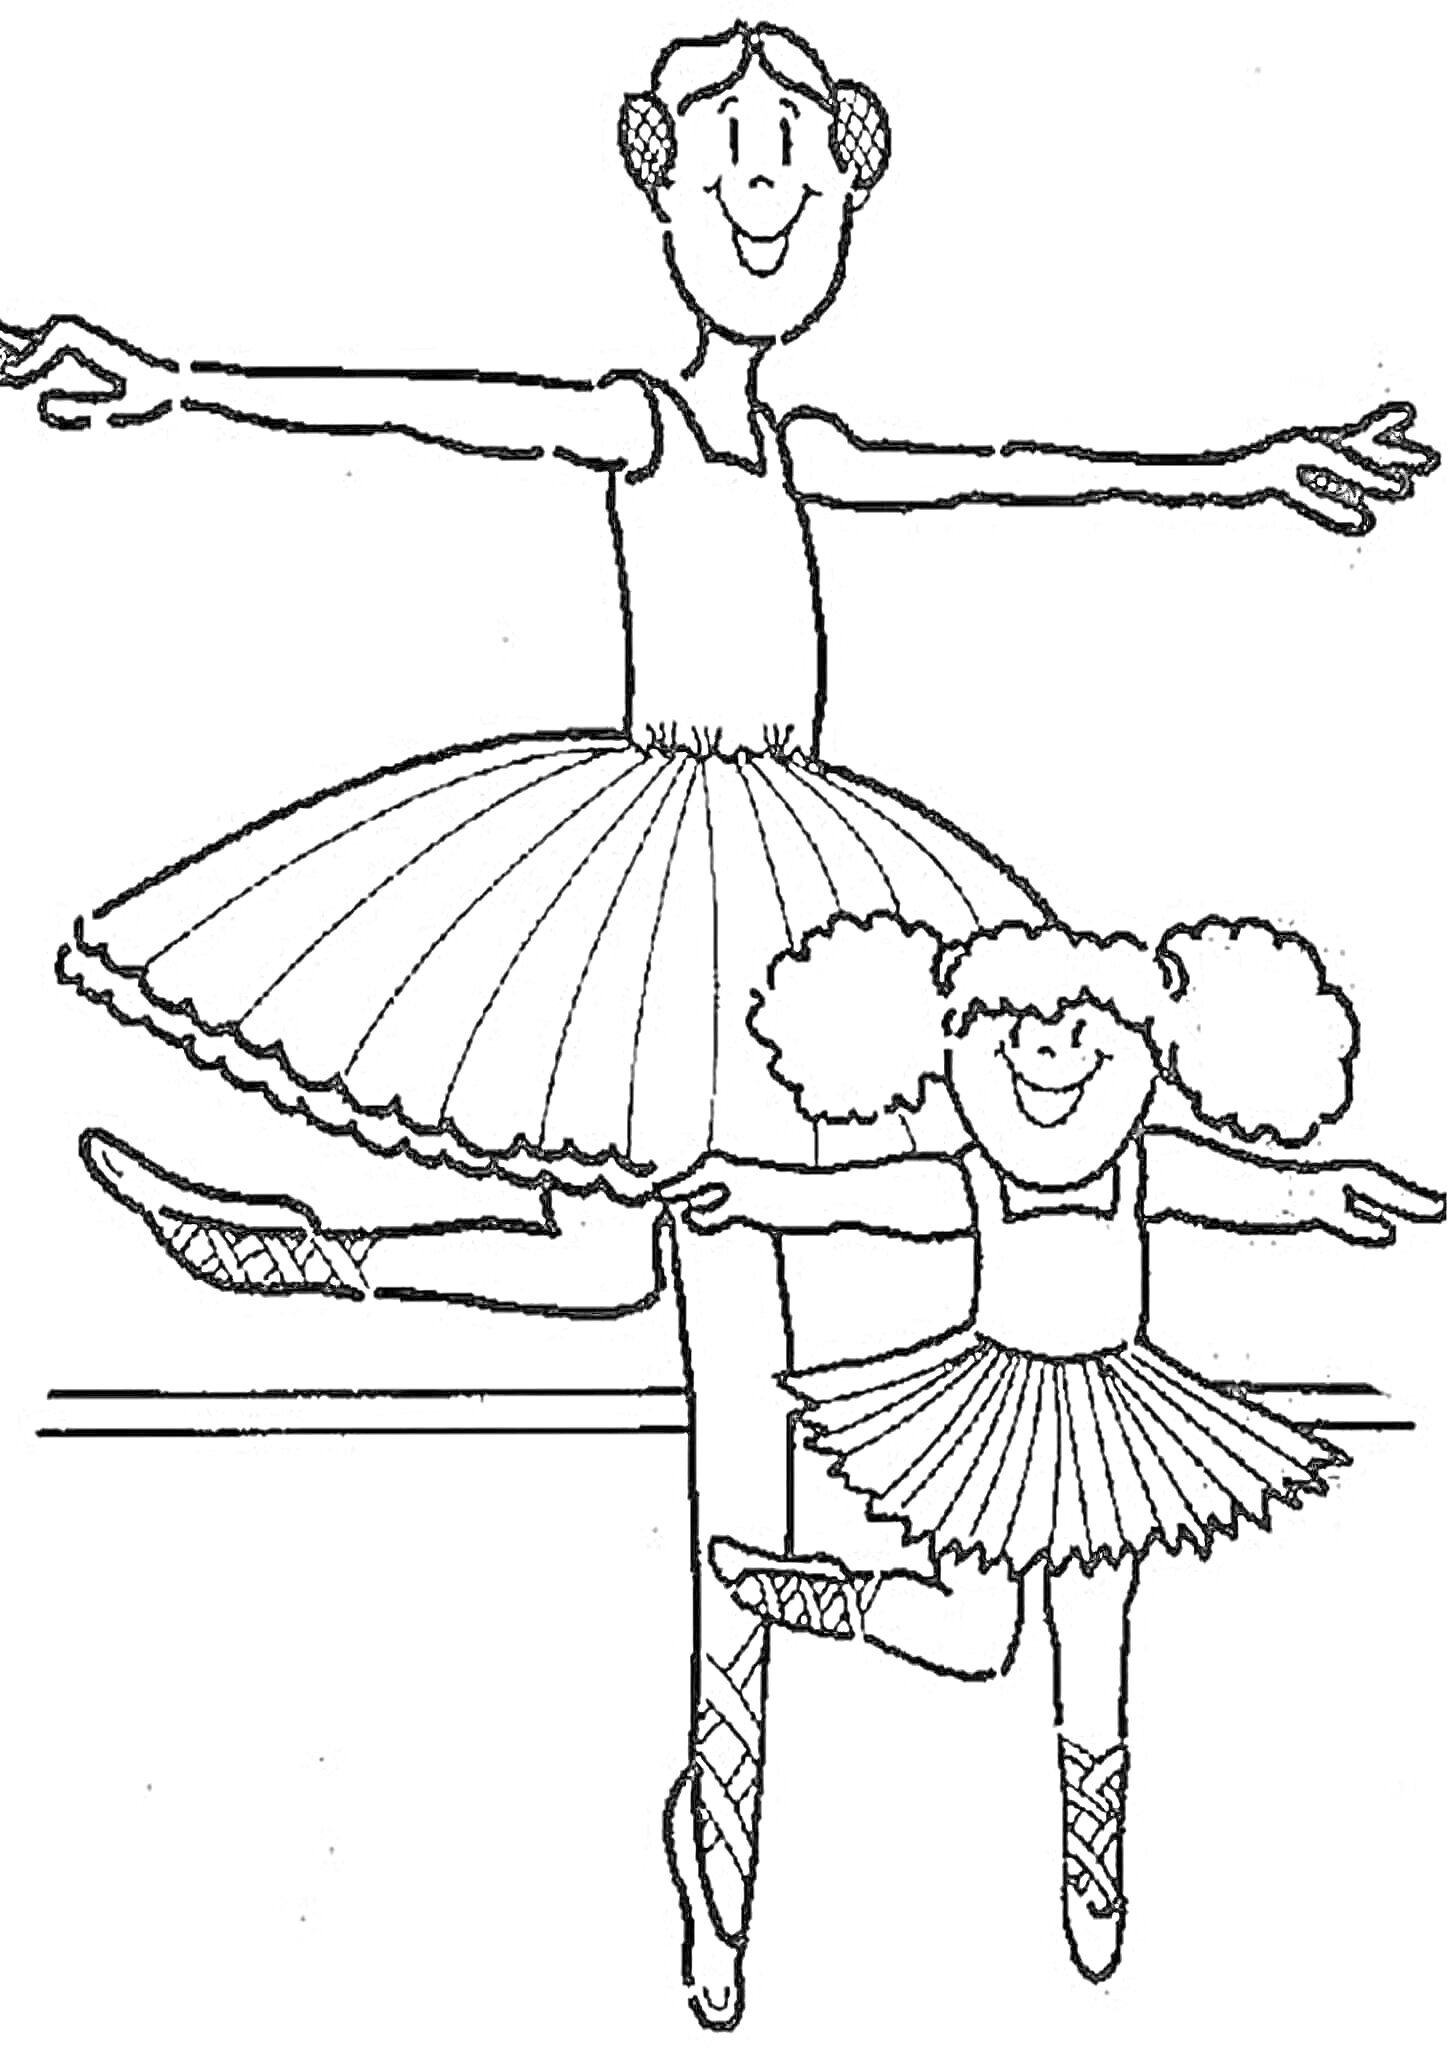 Хореограф и маленькая балерина в балетных костюмах, исполняющие балетные па